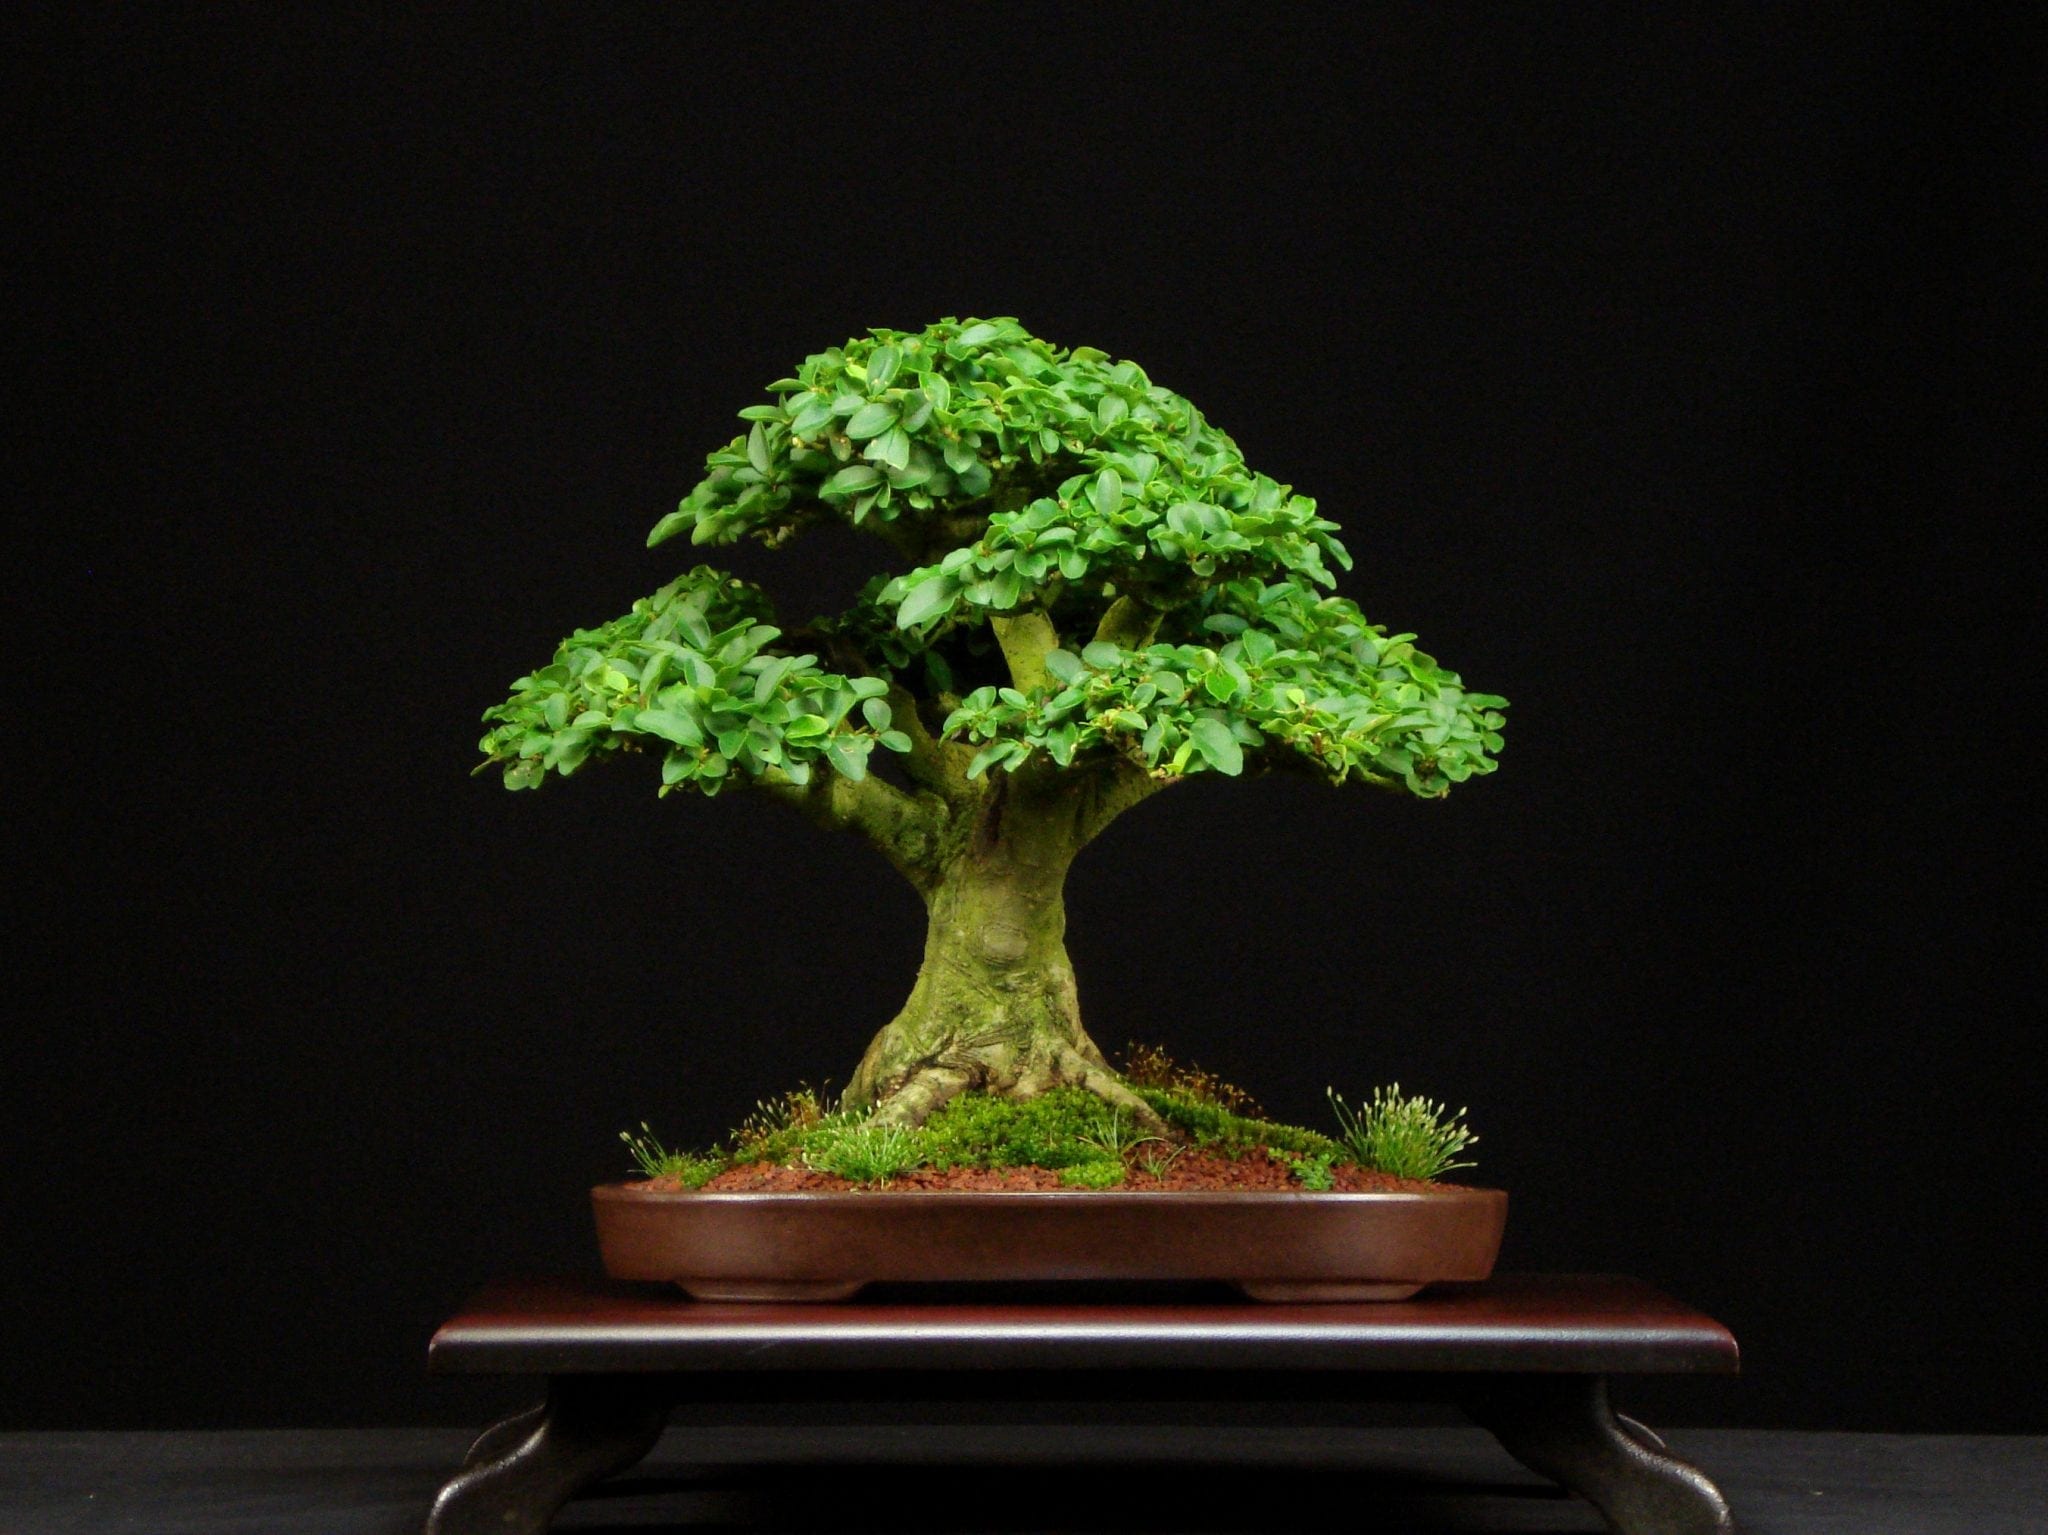 Privet Bonsai Tree